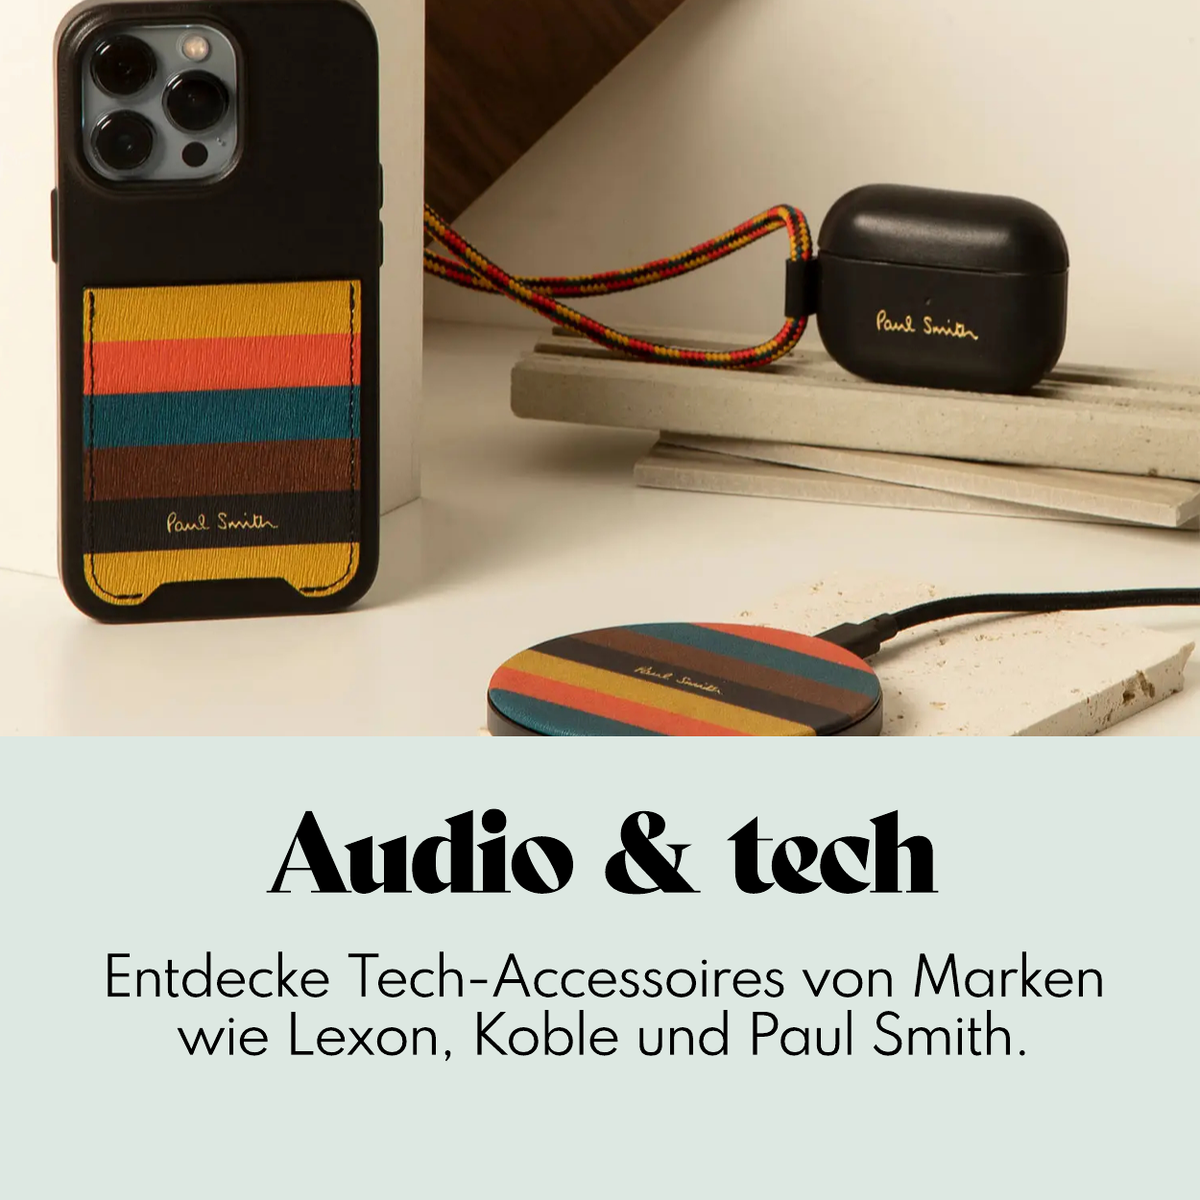 Audio & tech accessoires